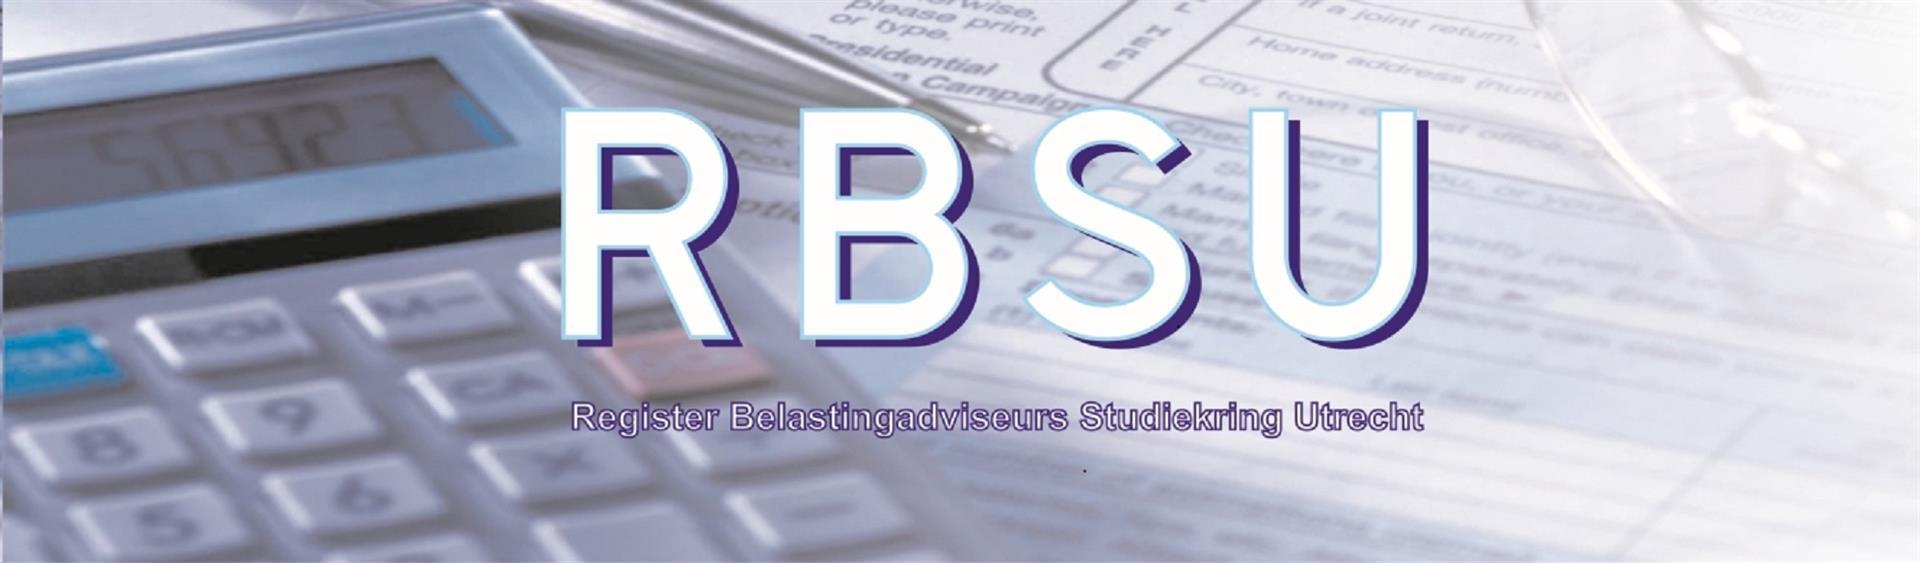 RBSU logo